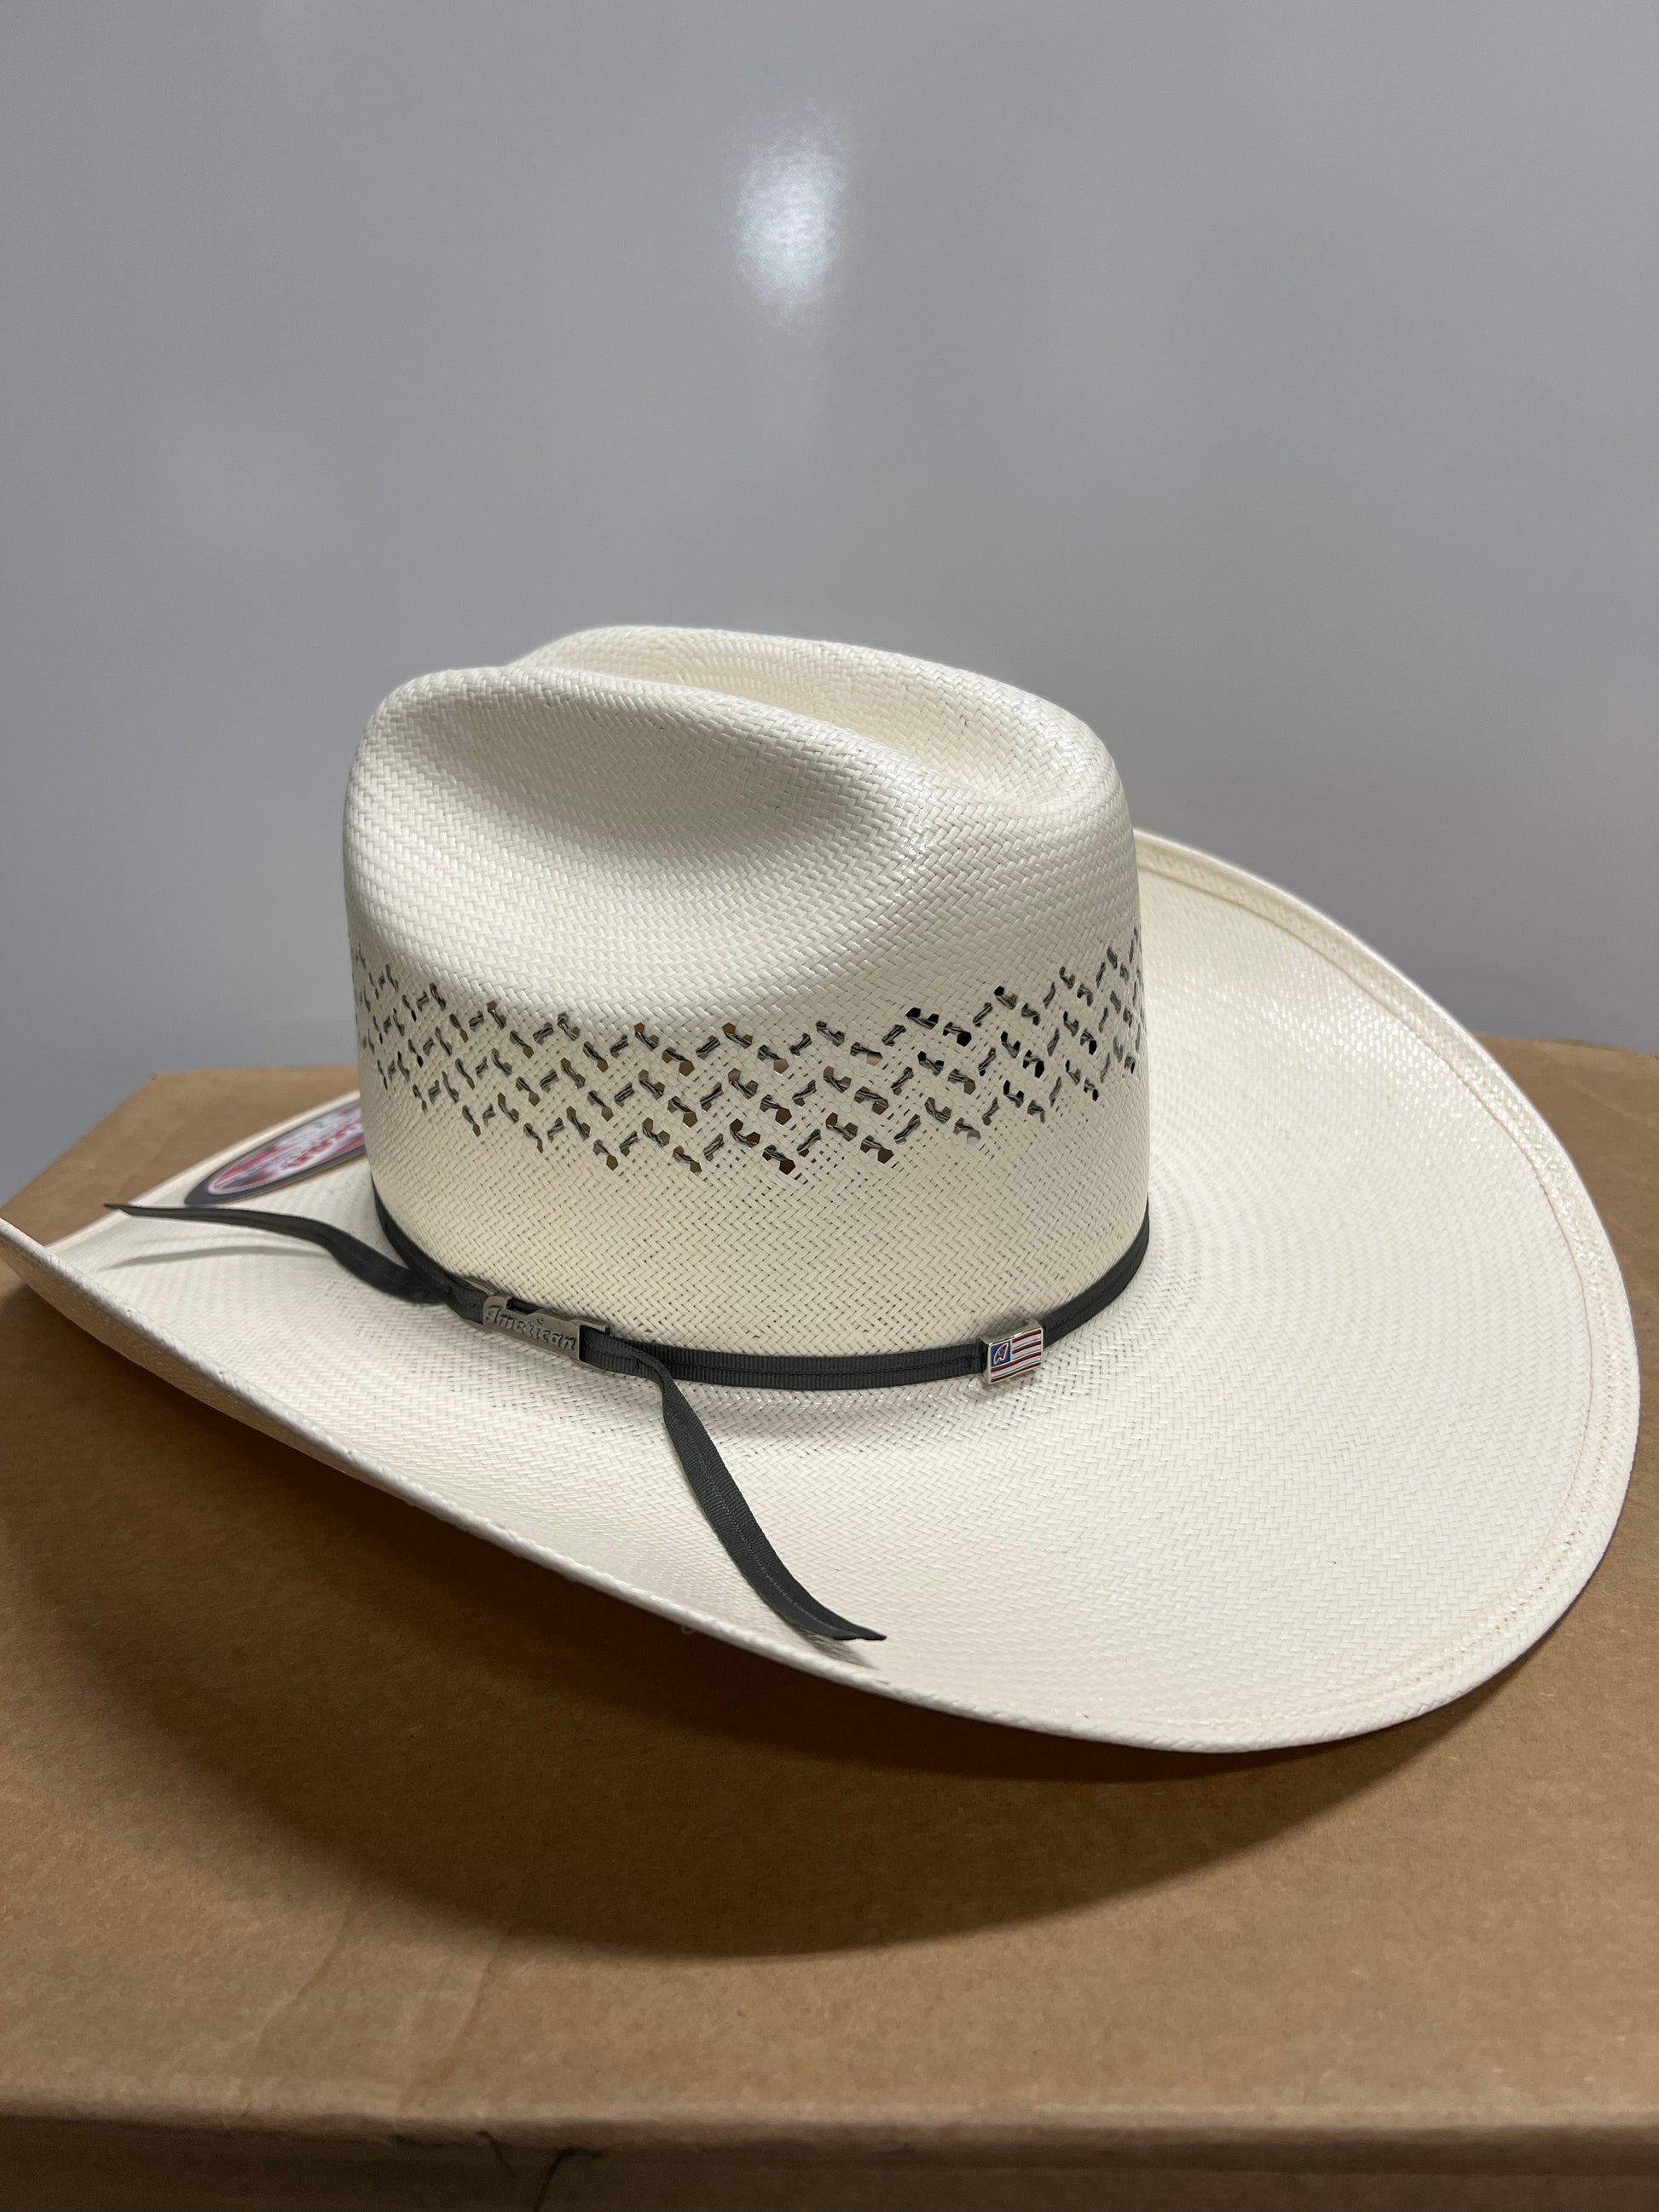 American Hat Co. Steel Straw Hat – Wiseman’s Western